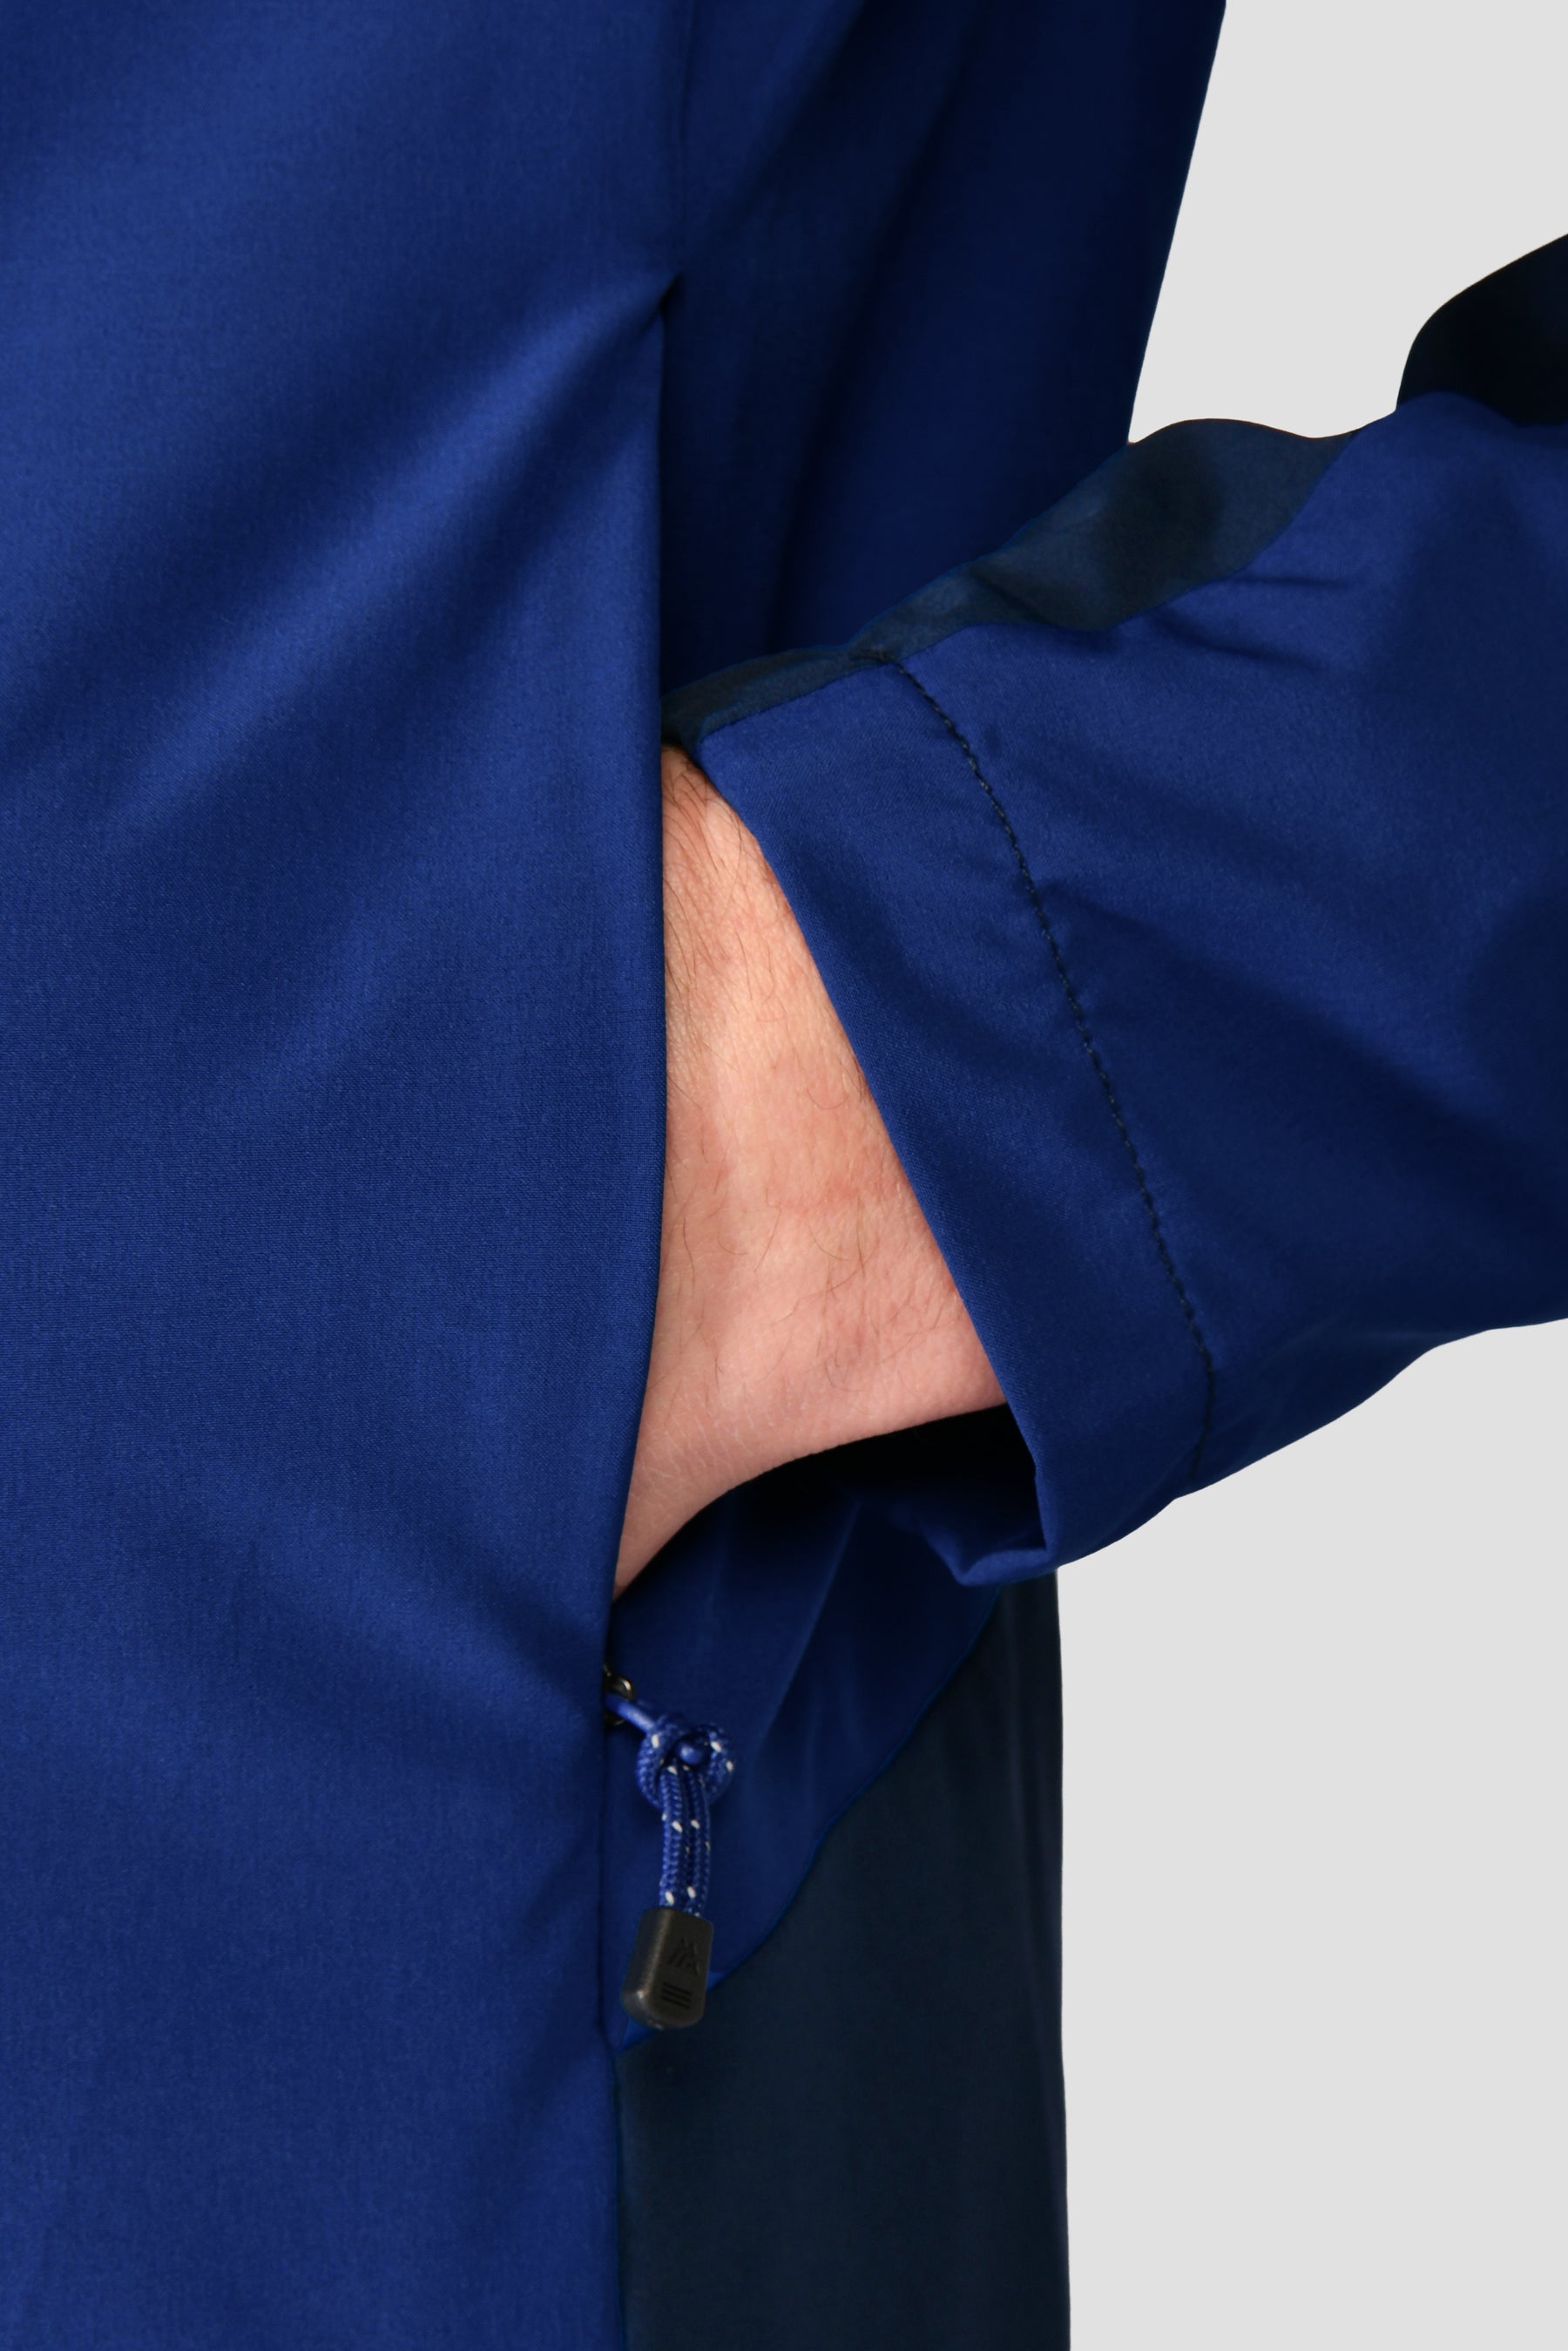 Men's Vector Jacket - Midnight Blue/Marine Blue